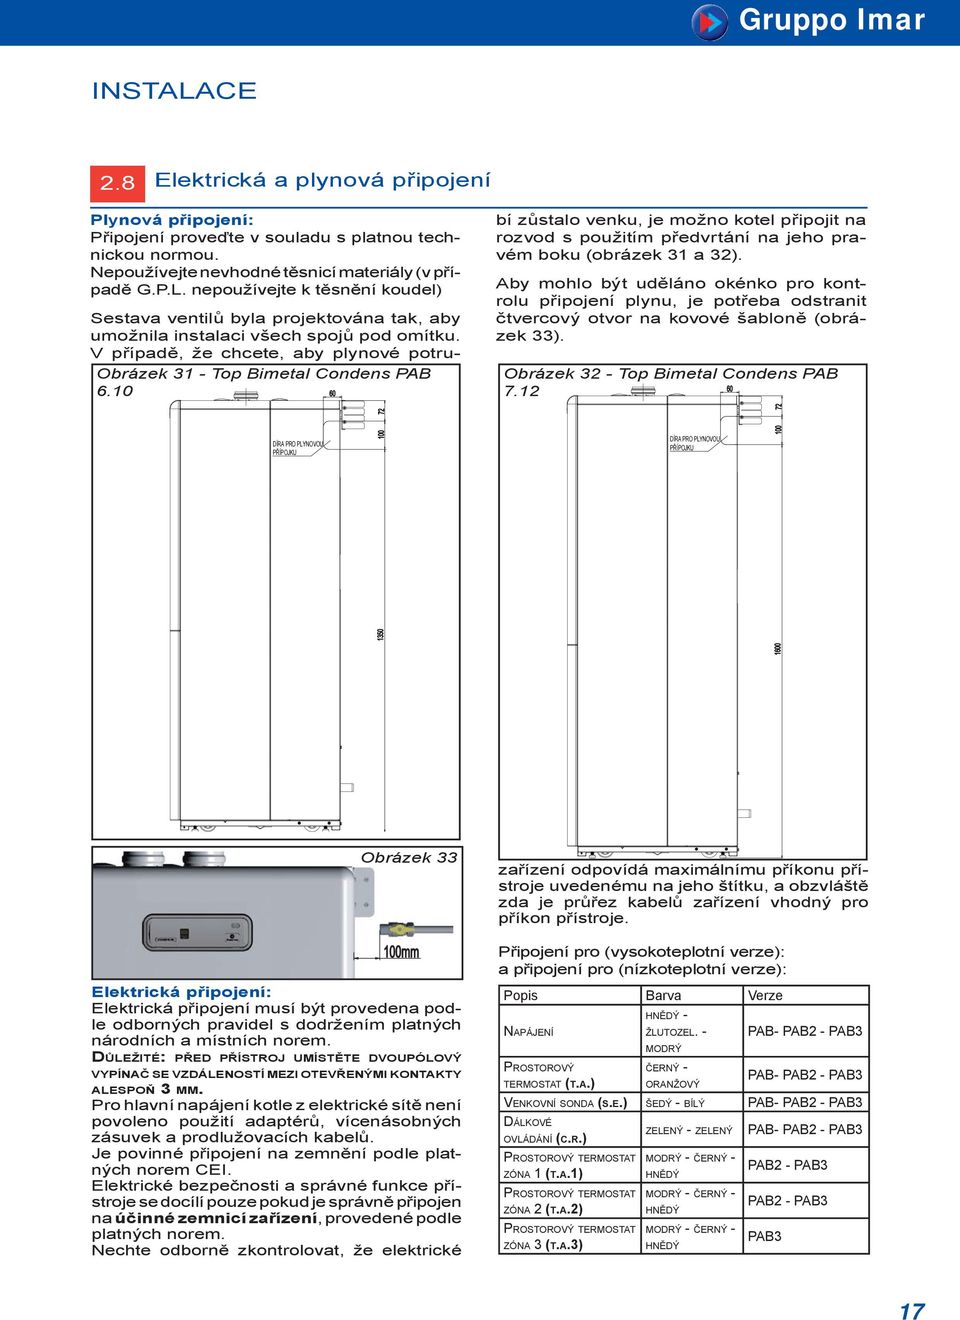 Aby mohlo být uděláno okénko pro kontrolu připojení plynu, je potřeba odstranit čtvercový otvor na kovové šabloně (obrázek 33). Obrázek 32 - Top Bimetal Condens PAB 60 7.